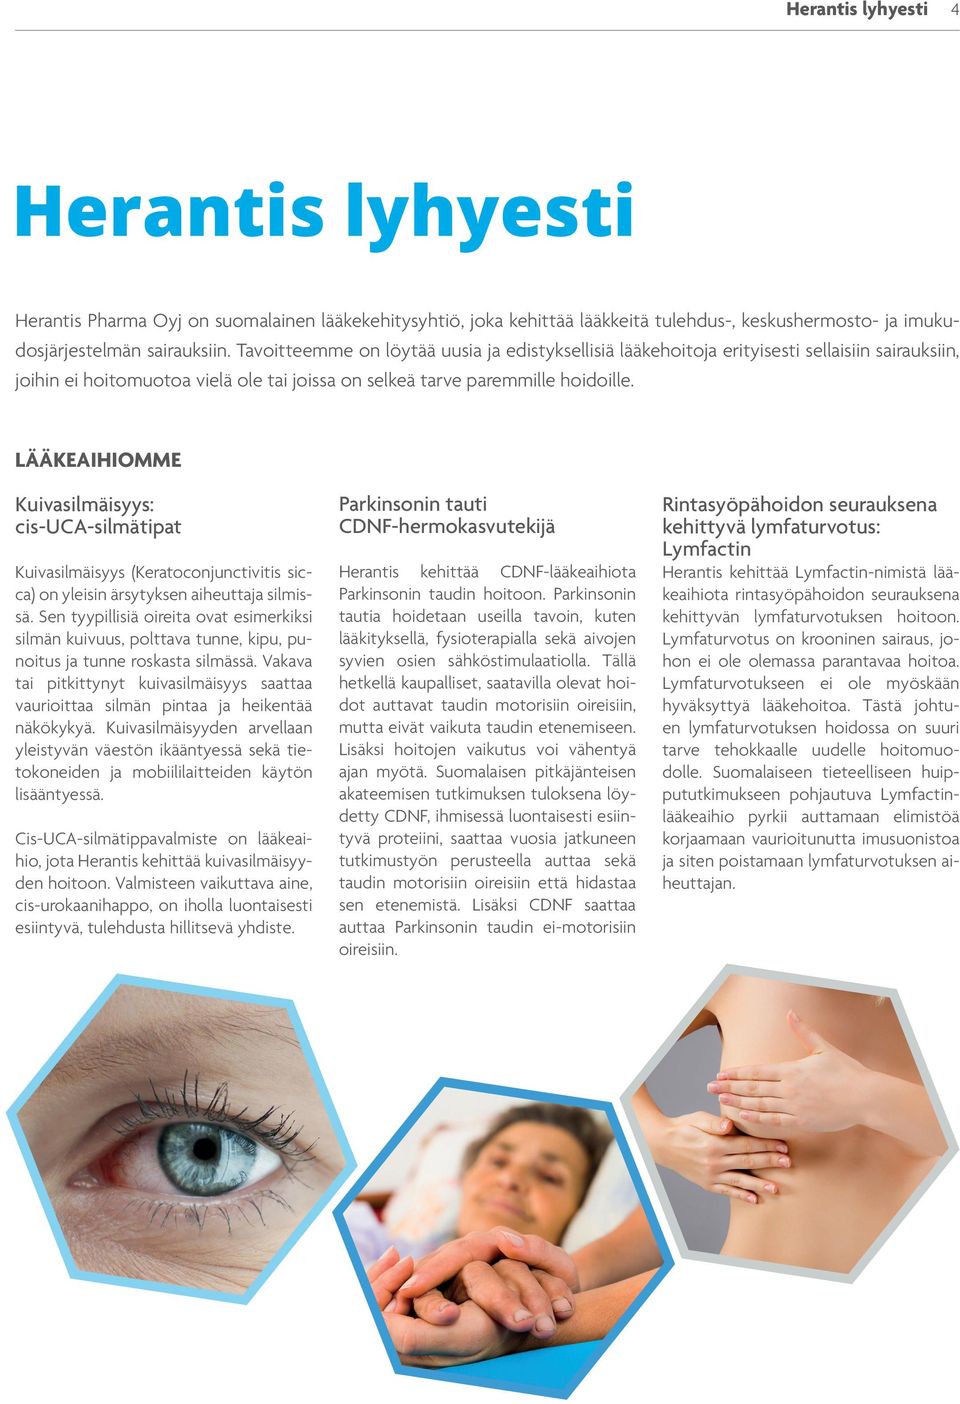 LÄÄKEAIHIOMME Kuivasilmäisyys: cis-uca-silmätipat Kuivasilmäisyys (Keratoconjunctivitis sicca) on yleisin ärsytyksen aiheuttaja silmissä.